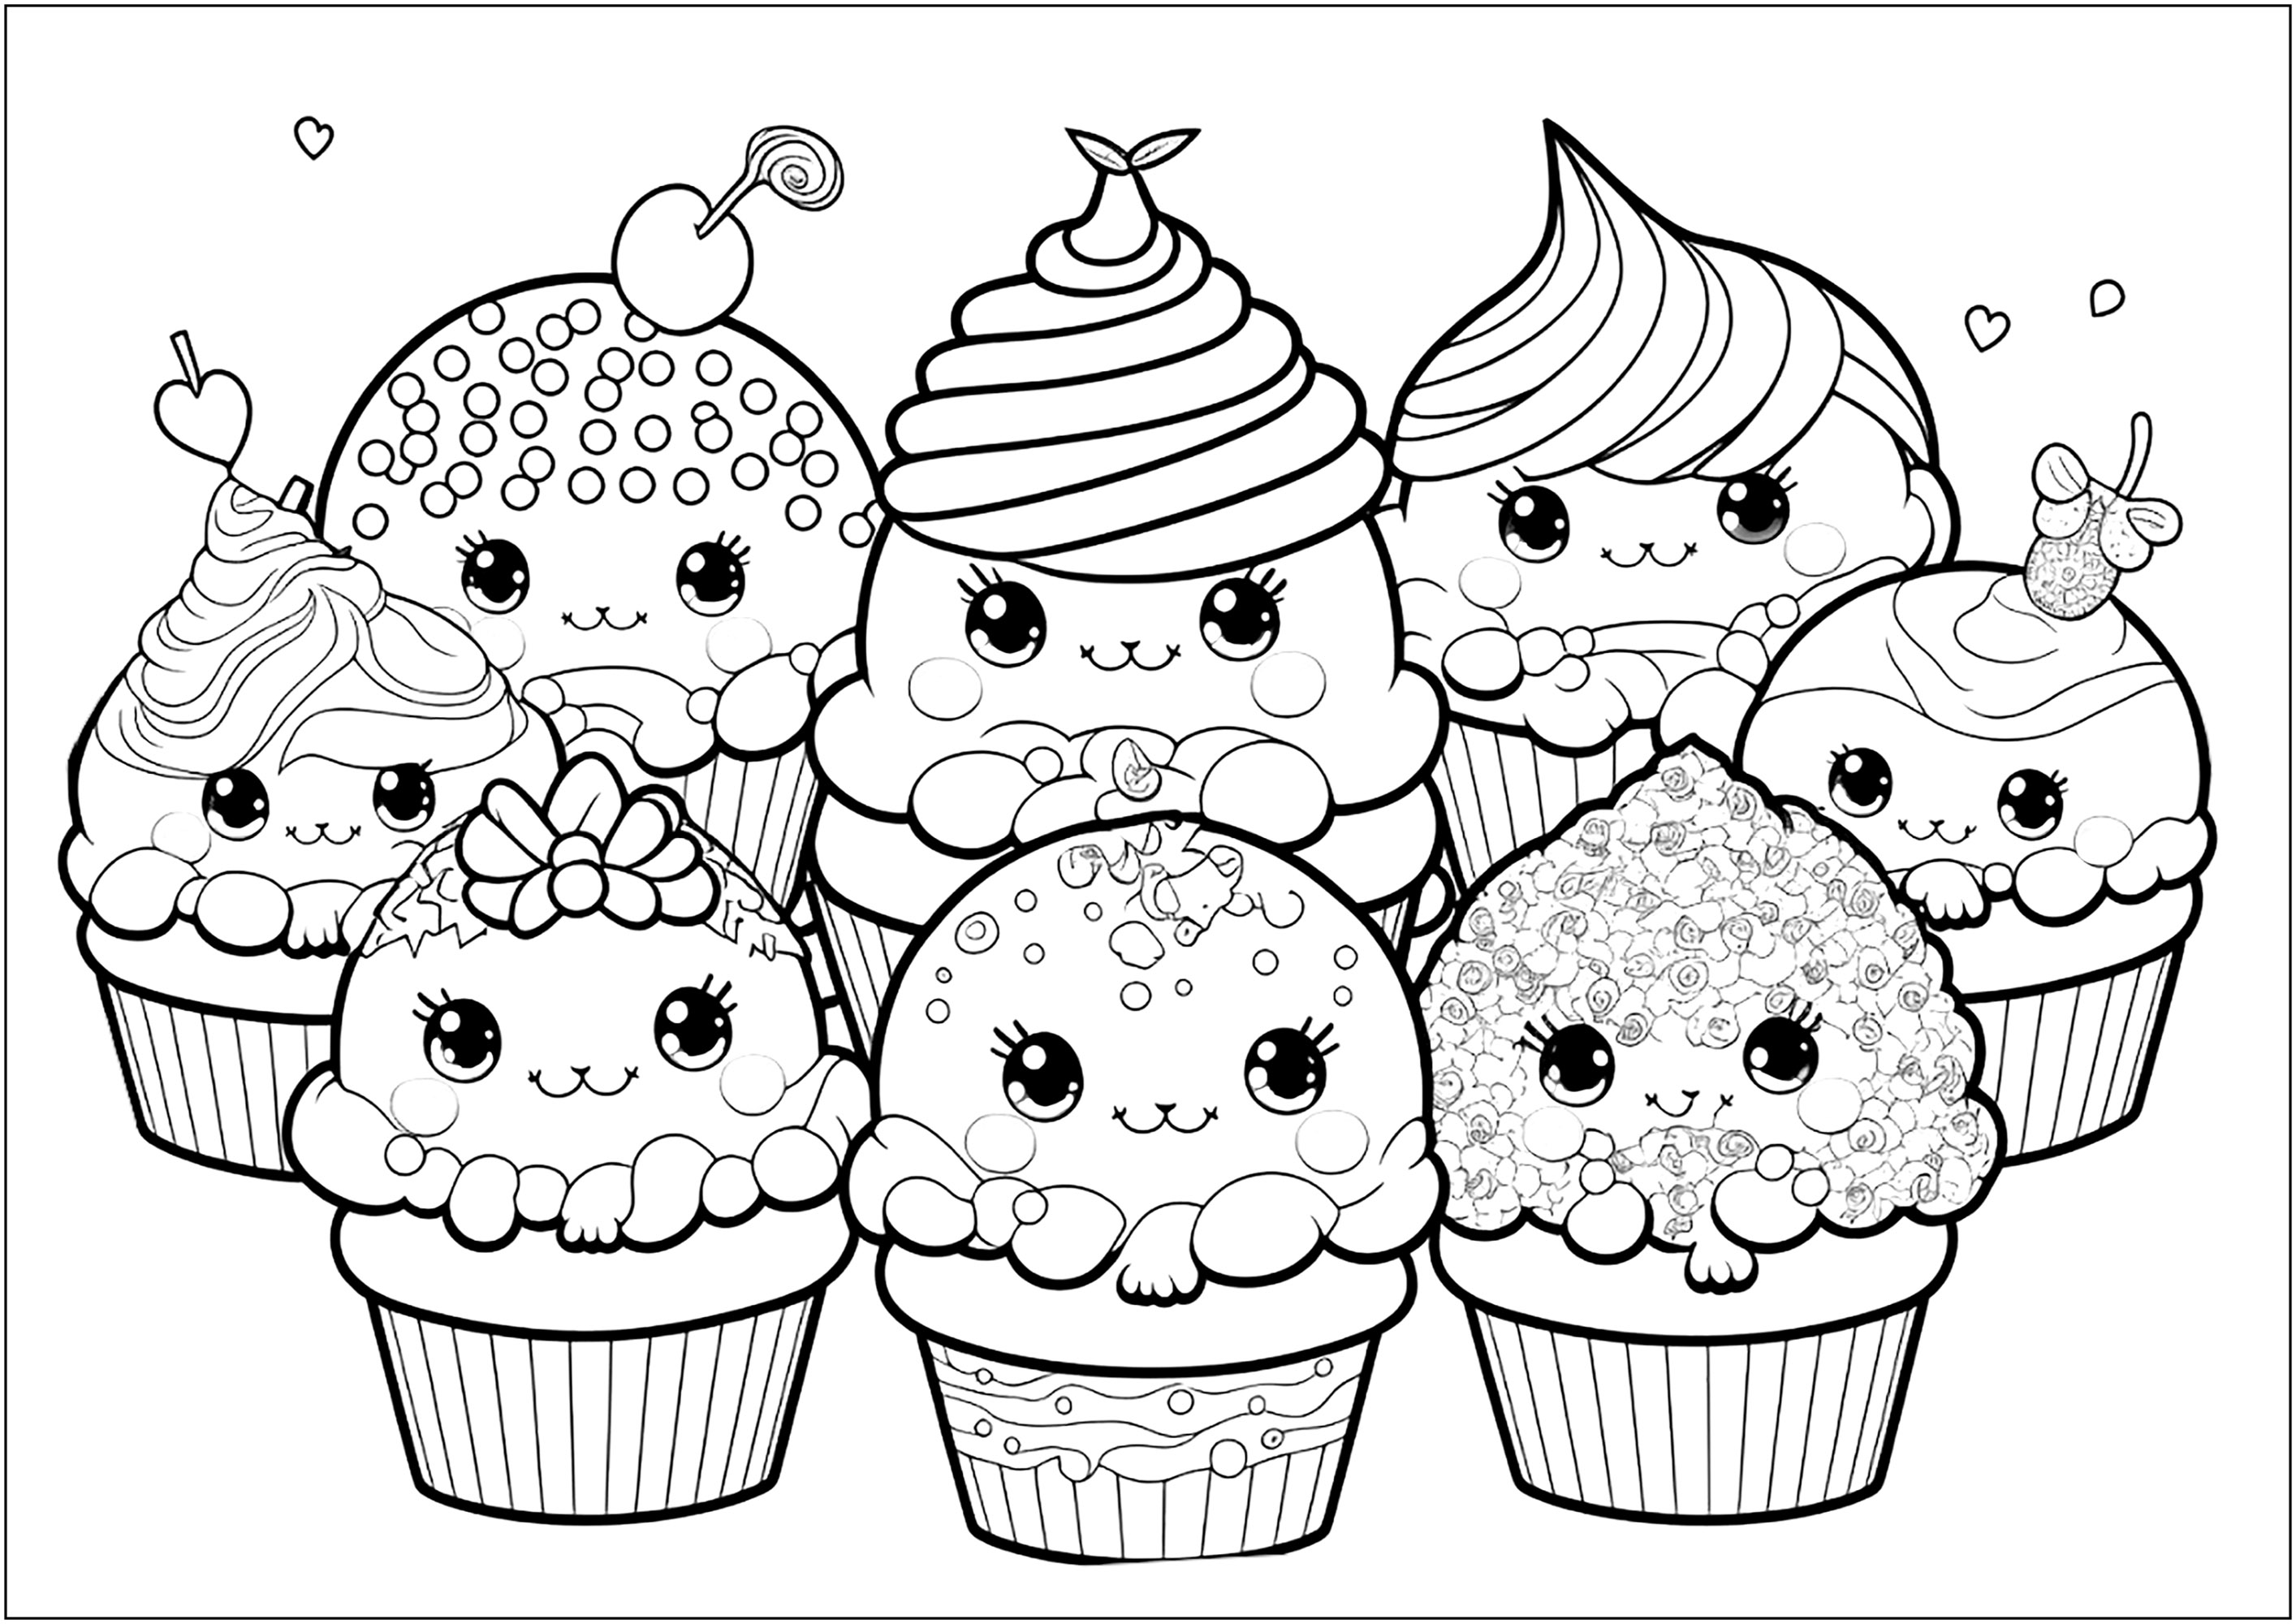 Simpáticos cupcakes con caras sonrientes inspirados en personajes kawaii